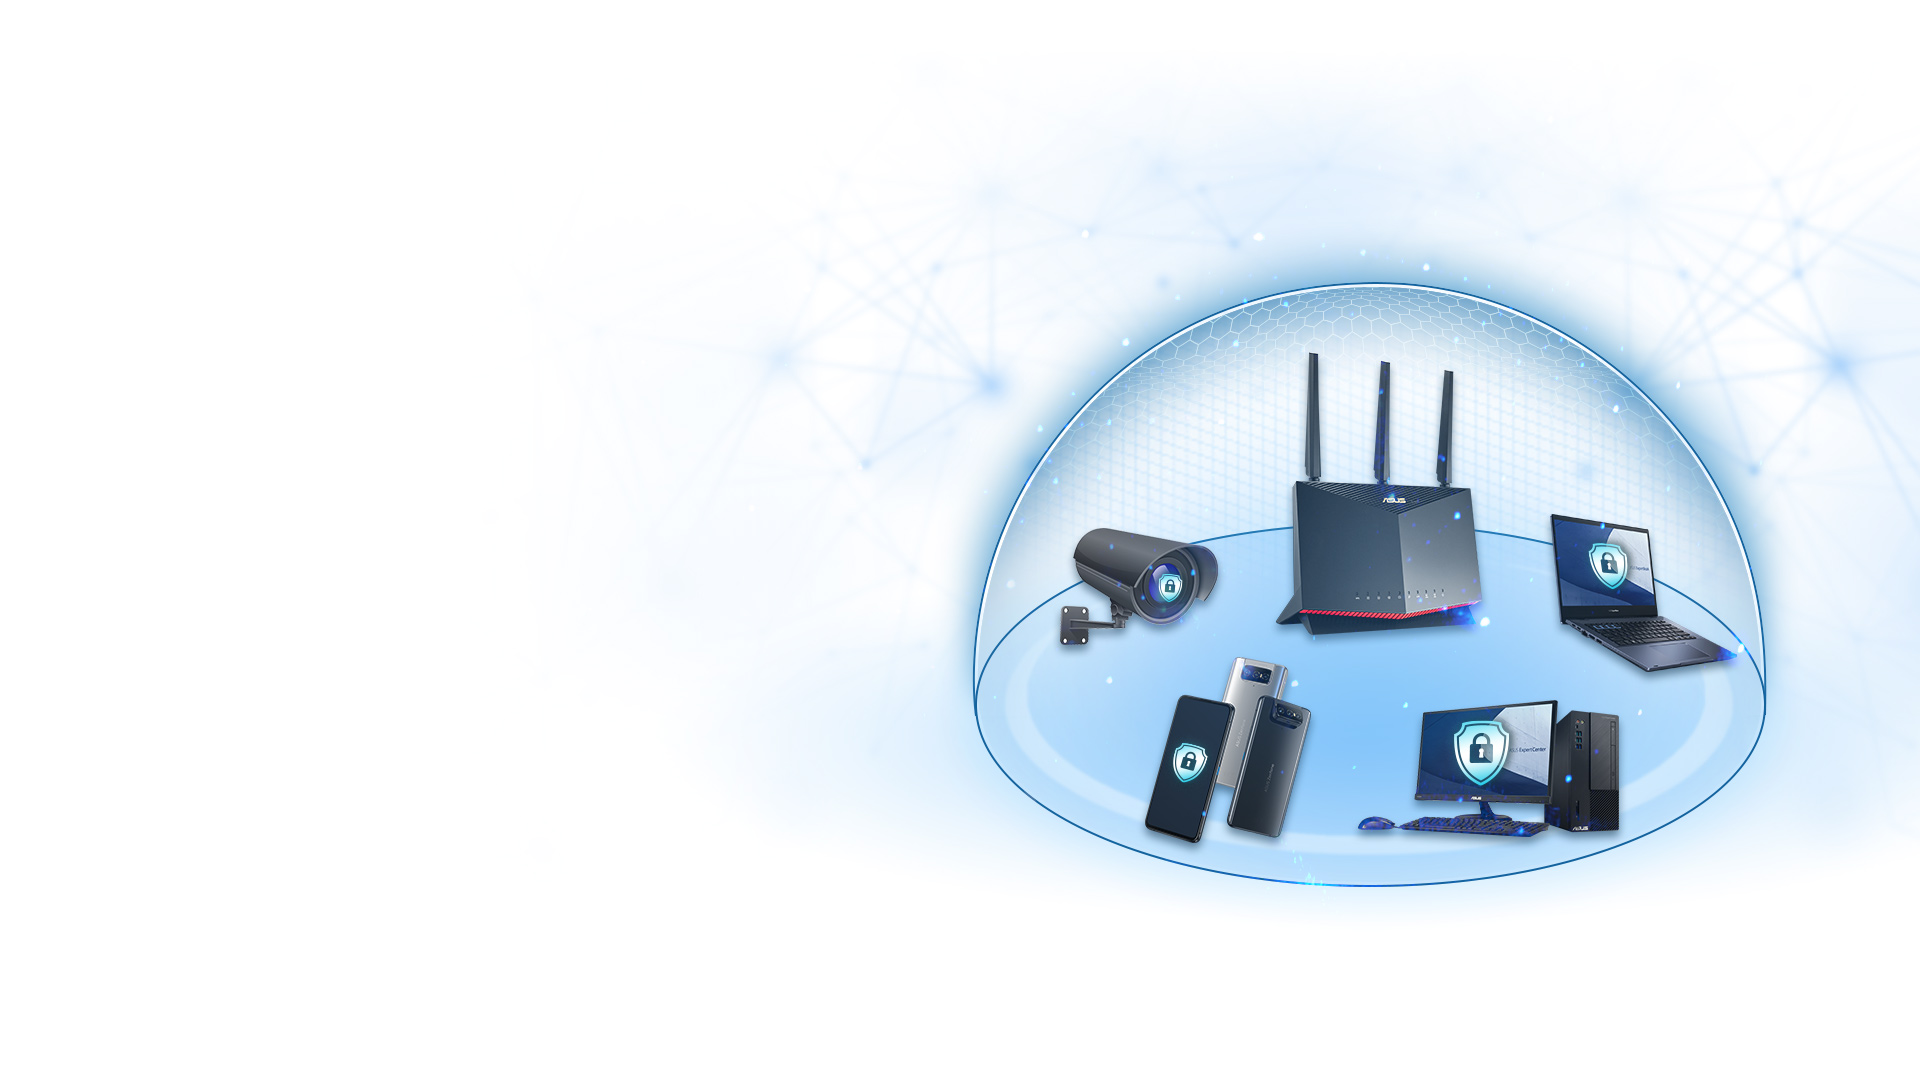 Die meisten ASUS-Router enthalten die AiProtection-Technologie von Trend Micro™, die dafür sorgt, dass jedes Gerät in Ihrem Unternehmensnetzwerk geschützt ist